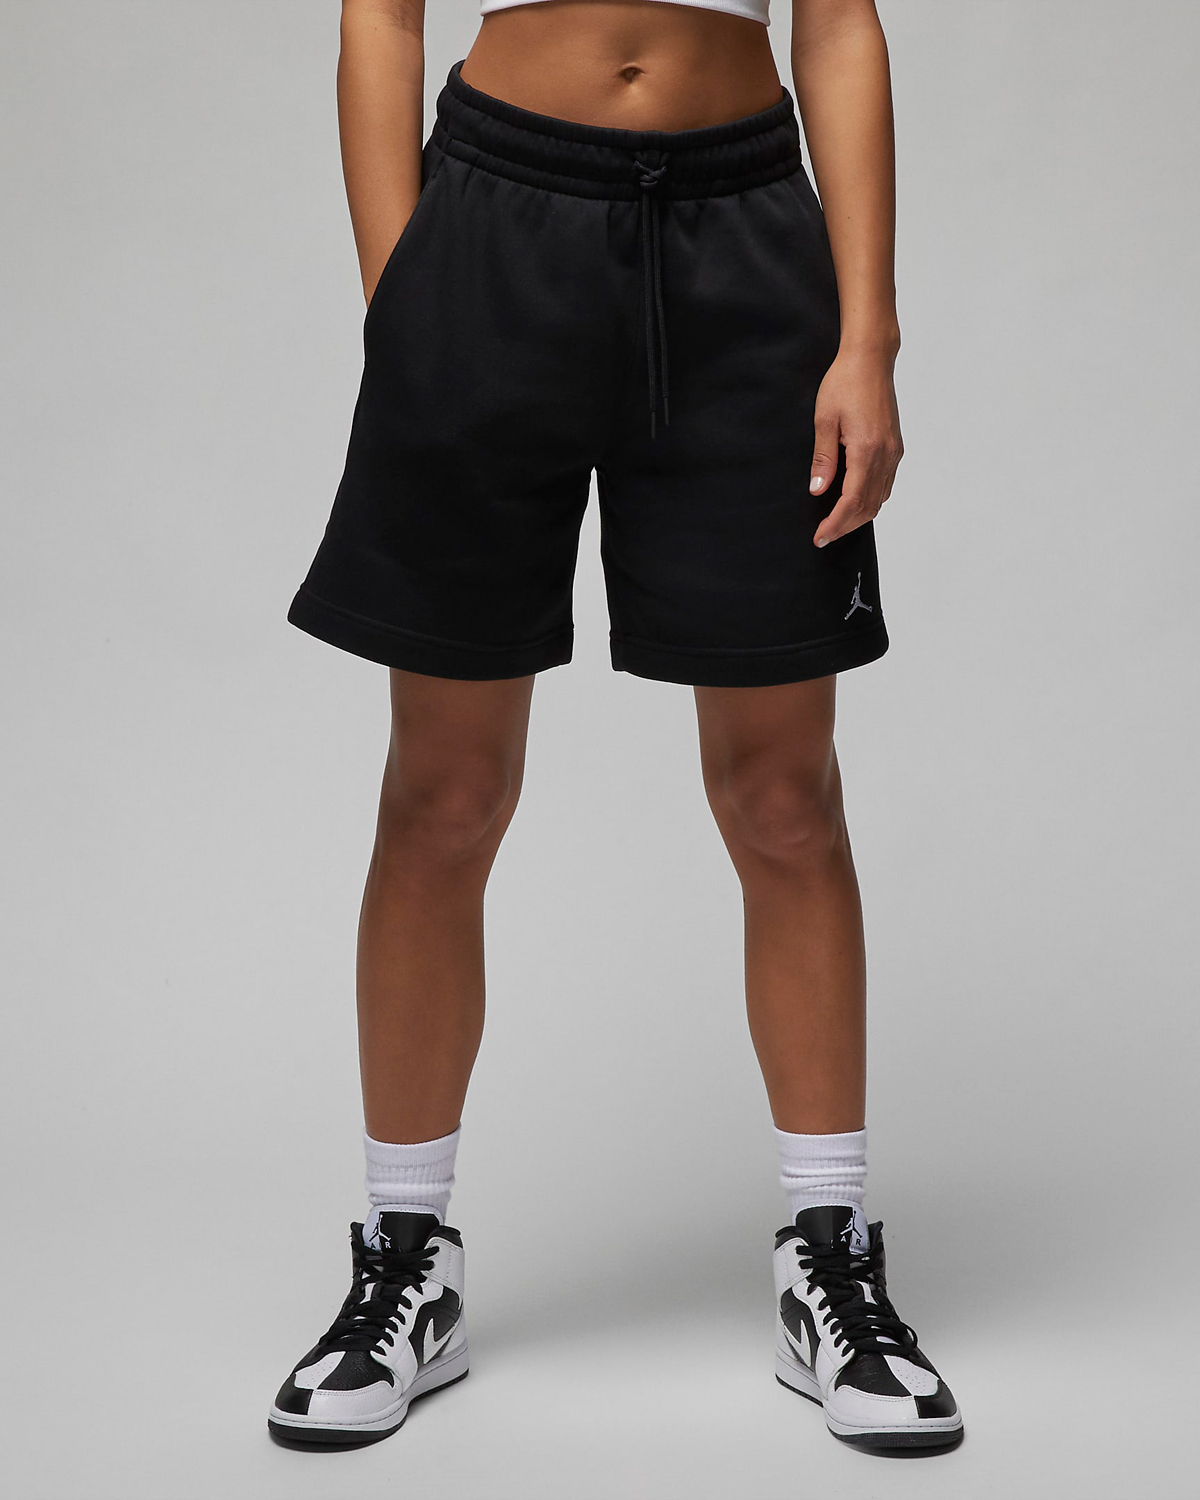 Jordan-Brooklyn-Womens-Shorts-Black